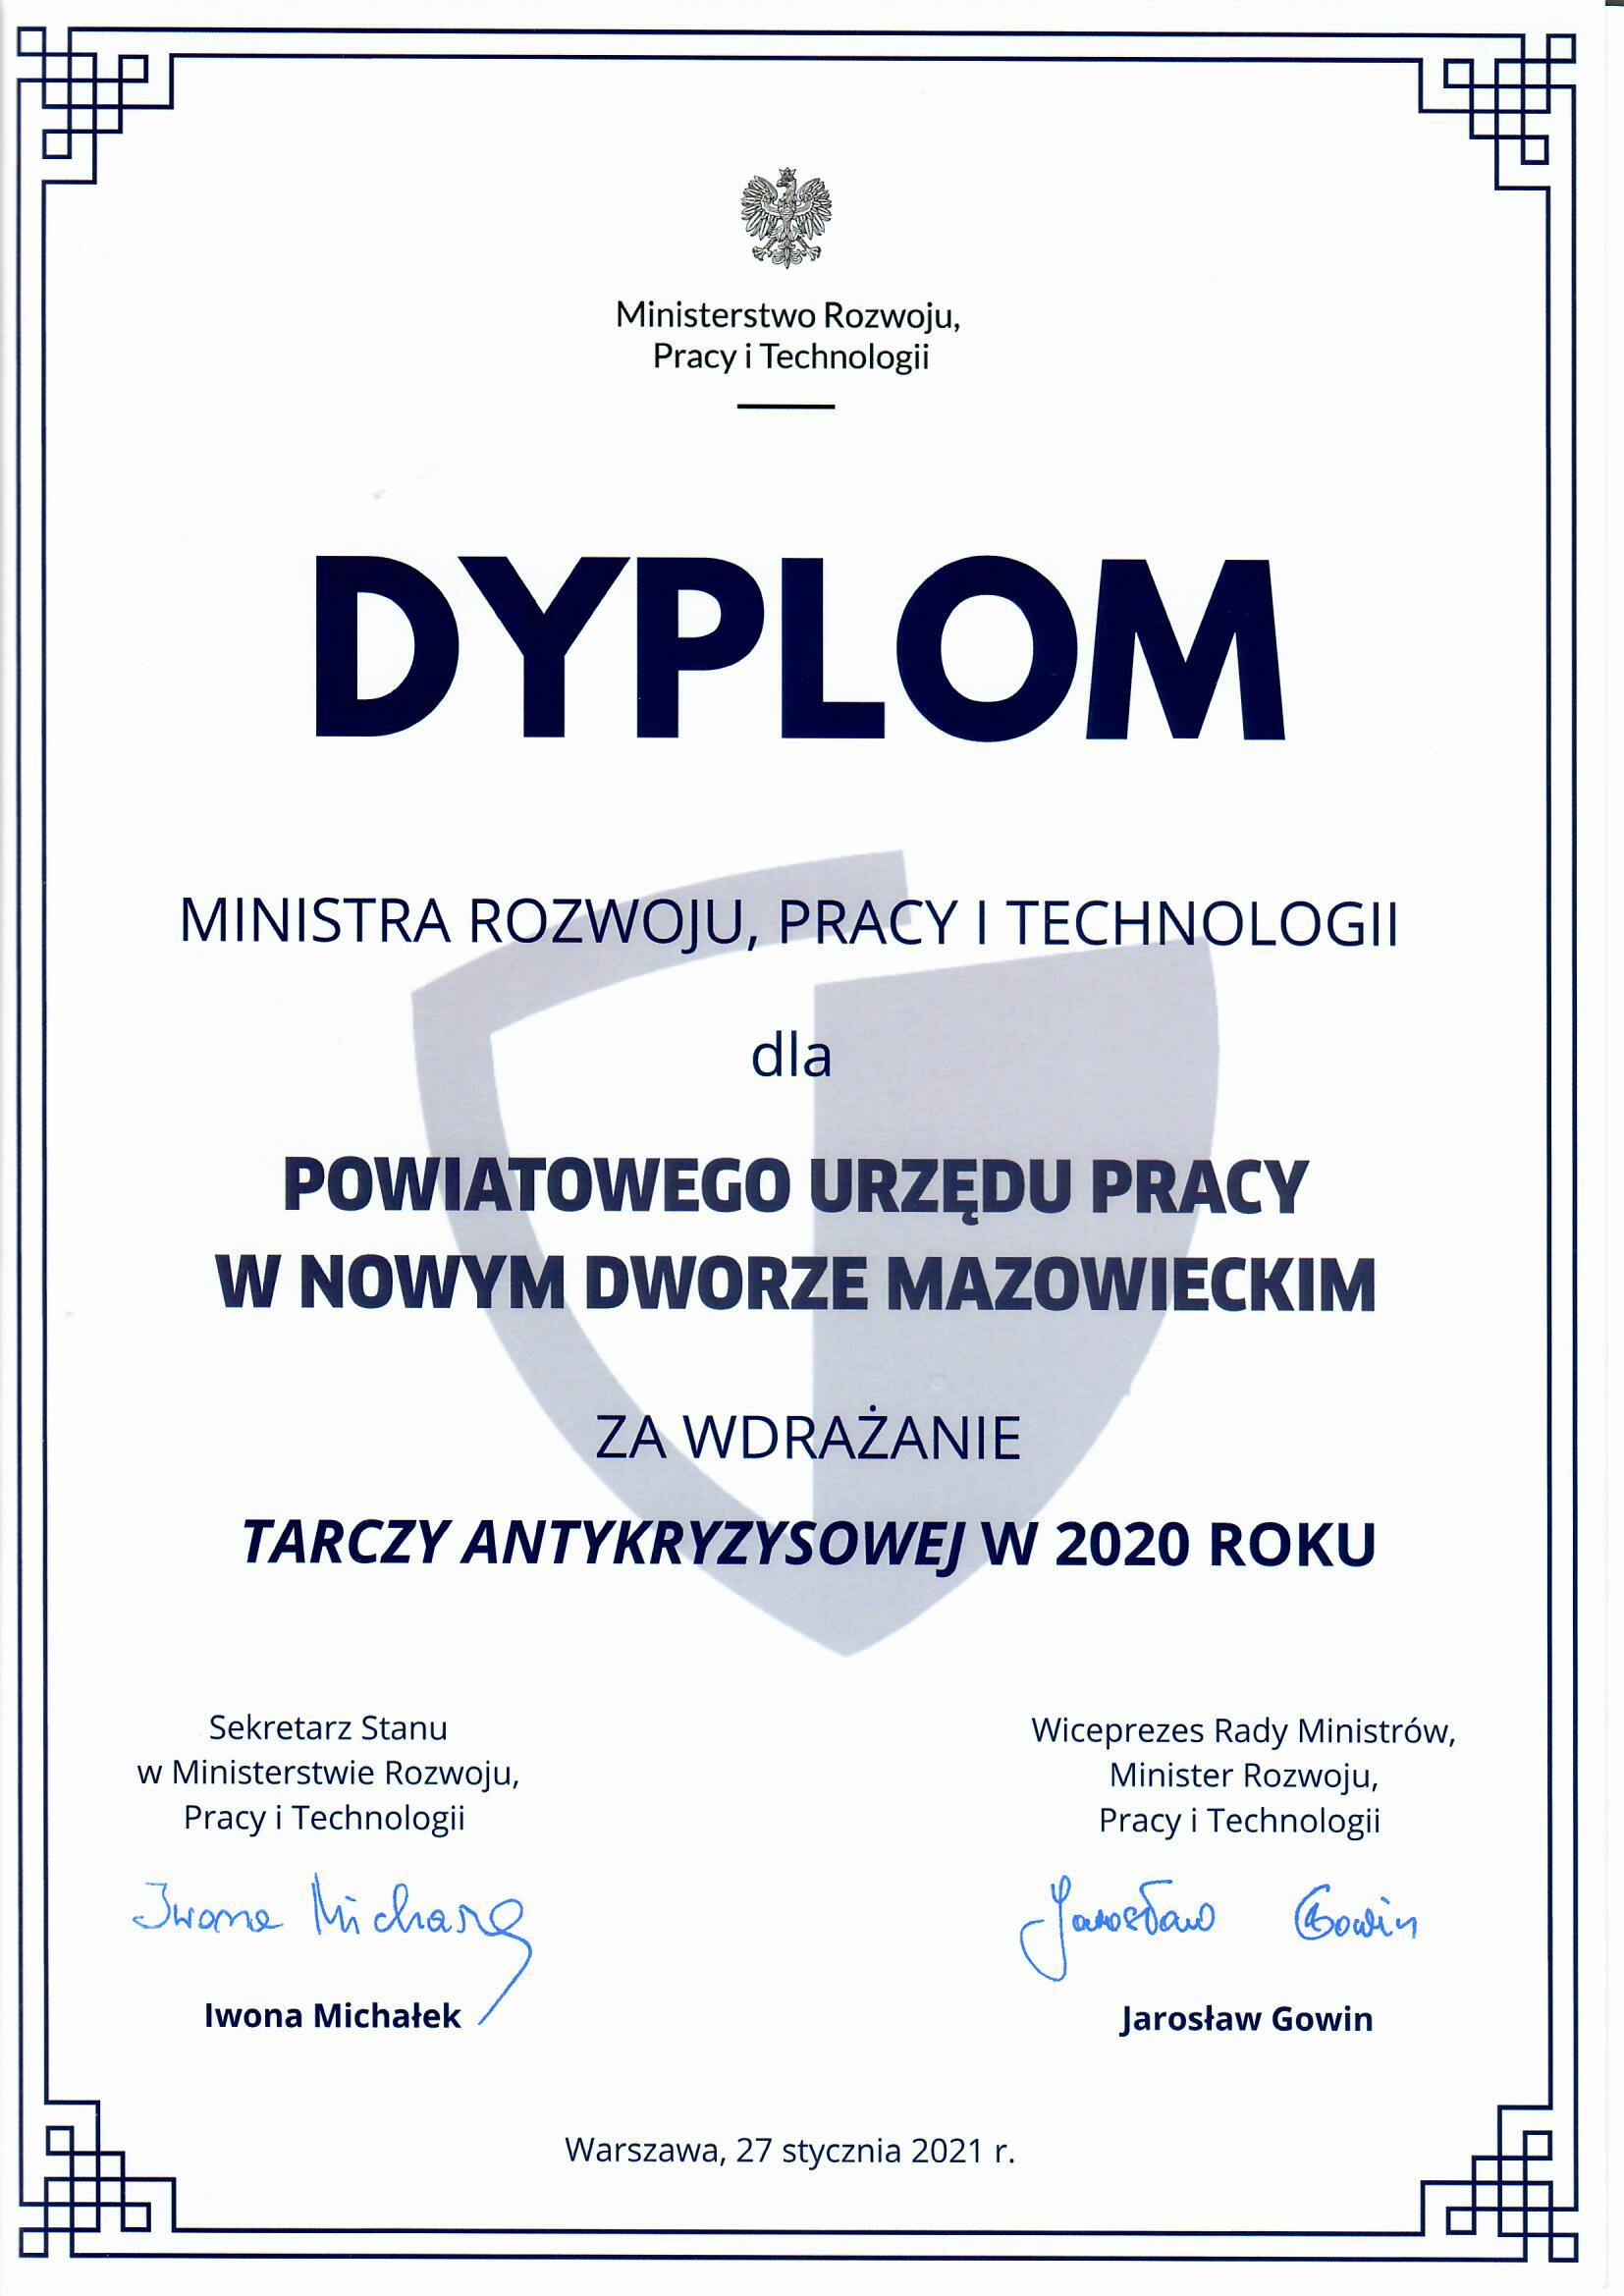 Dyplom Ministra Rozwoju, Pracy i Technologii dla Powiatowego Urzędu Pracy w Nowym Dworze Mazowieckim za wdrażanie Tarczy Antykryzysowej w 2020 roku